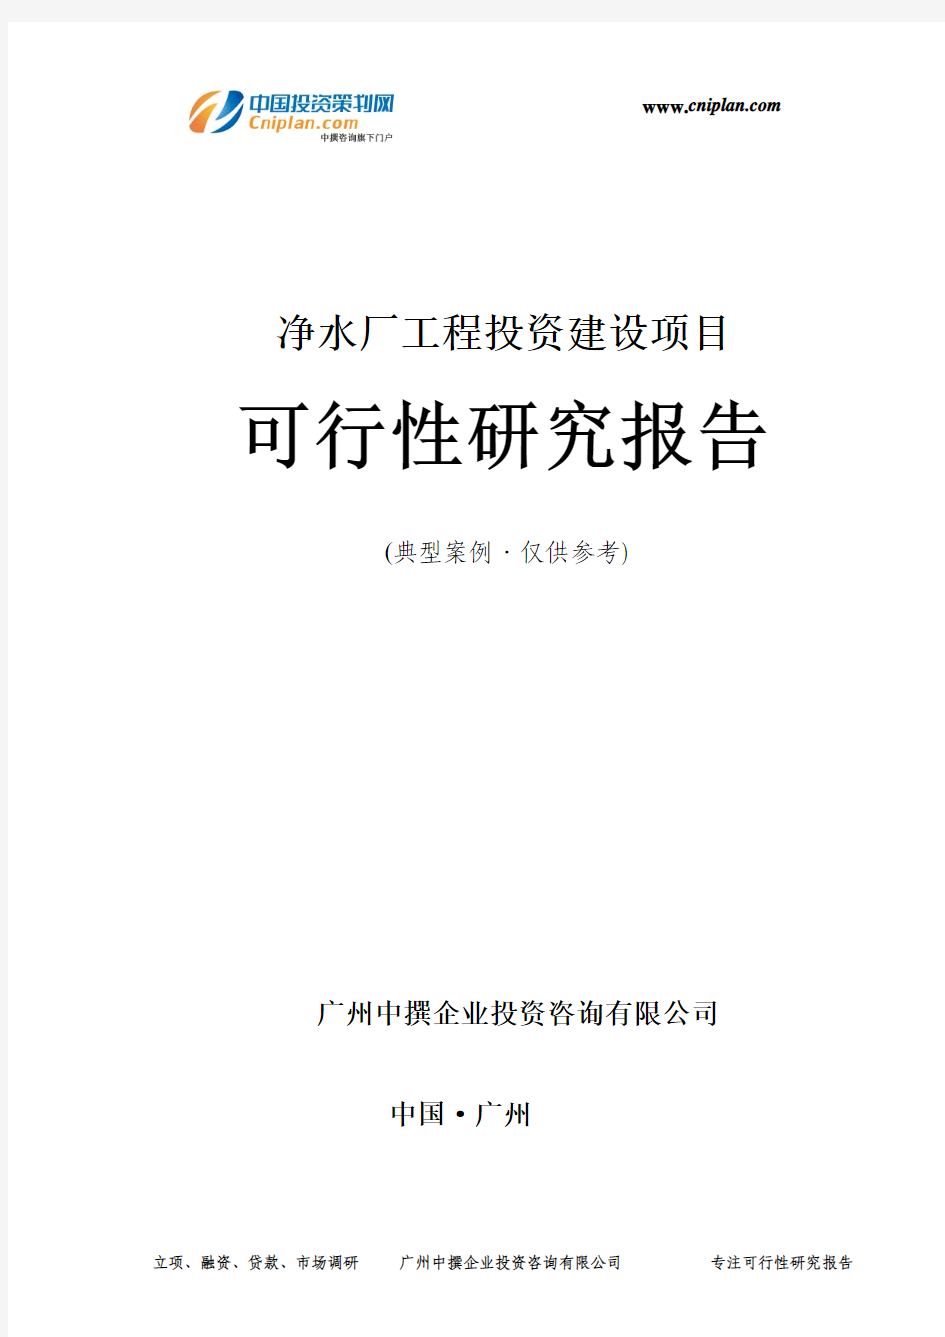 净水厂工程投资建设项目可行性研究报告-广州中撰咨询